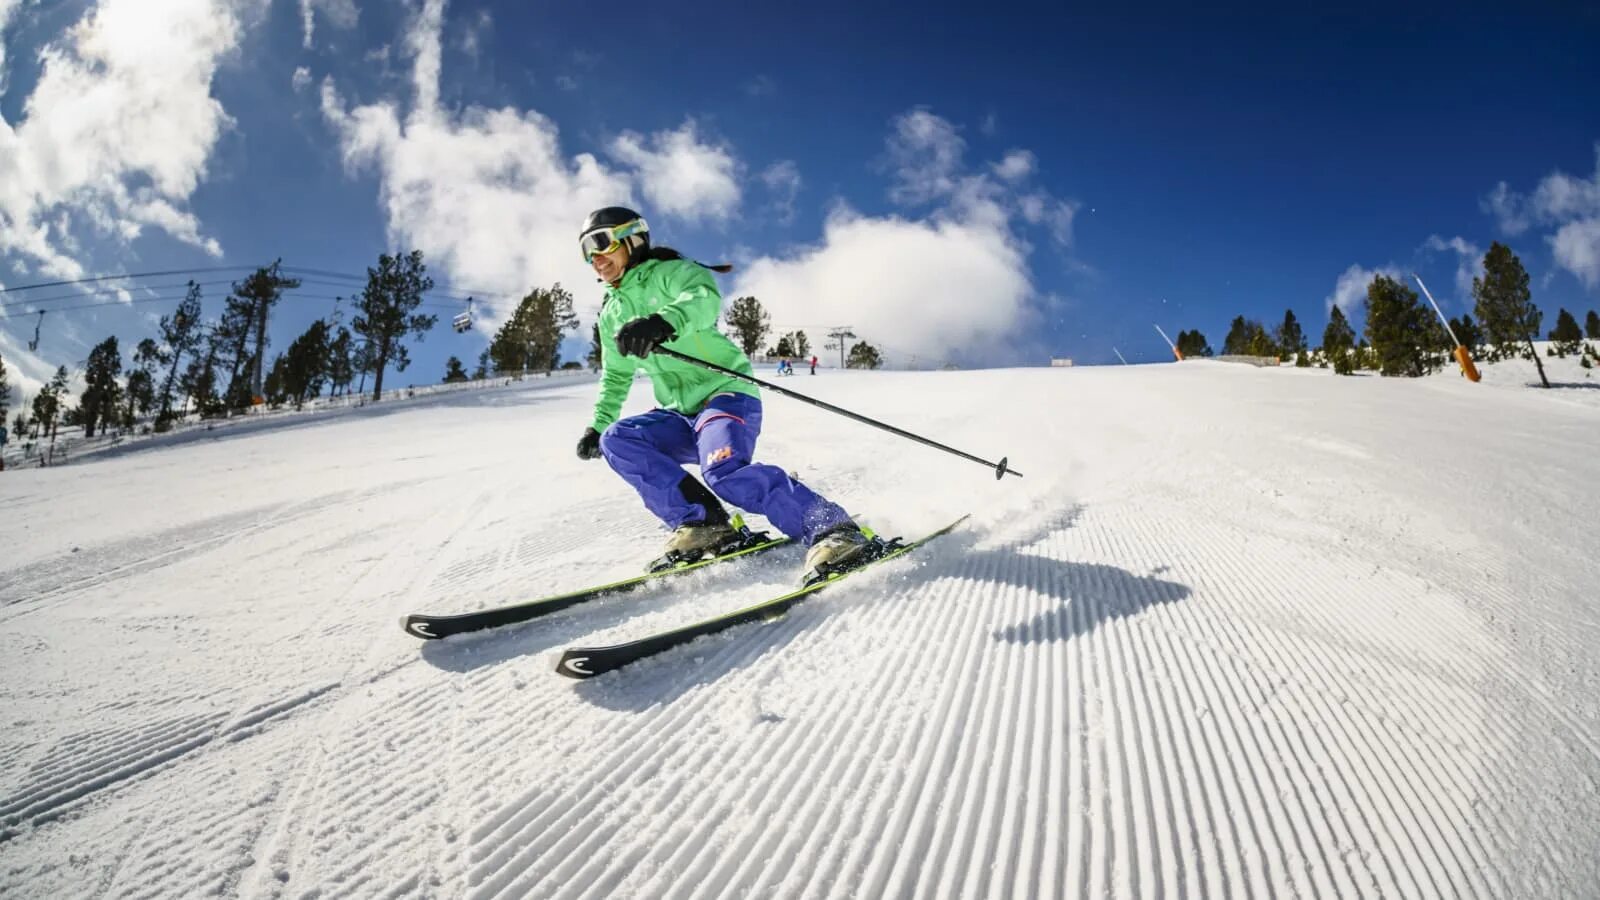 Skiing holiday. Андорра горнолыжный курорт. Волшебные лыжи. Андорра лыжи курорт высота. Концепция горнолыжного курорта Андорра - 2016.